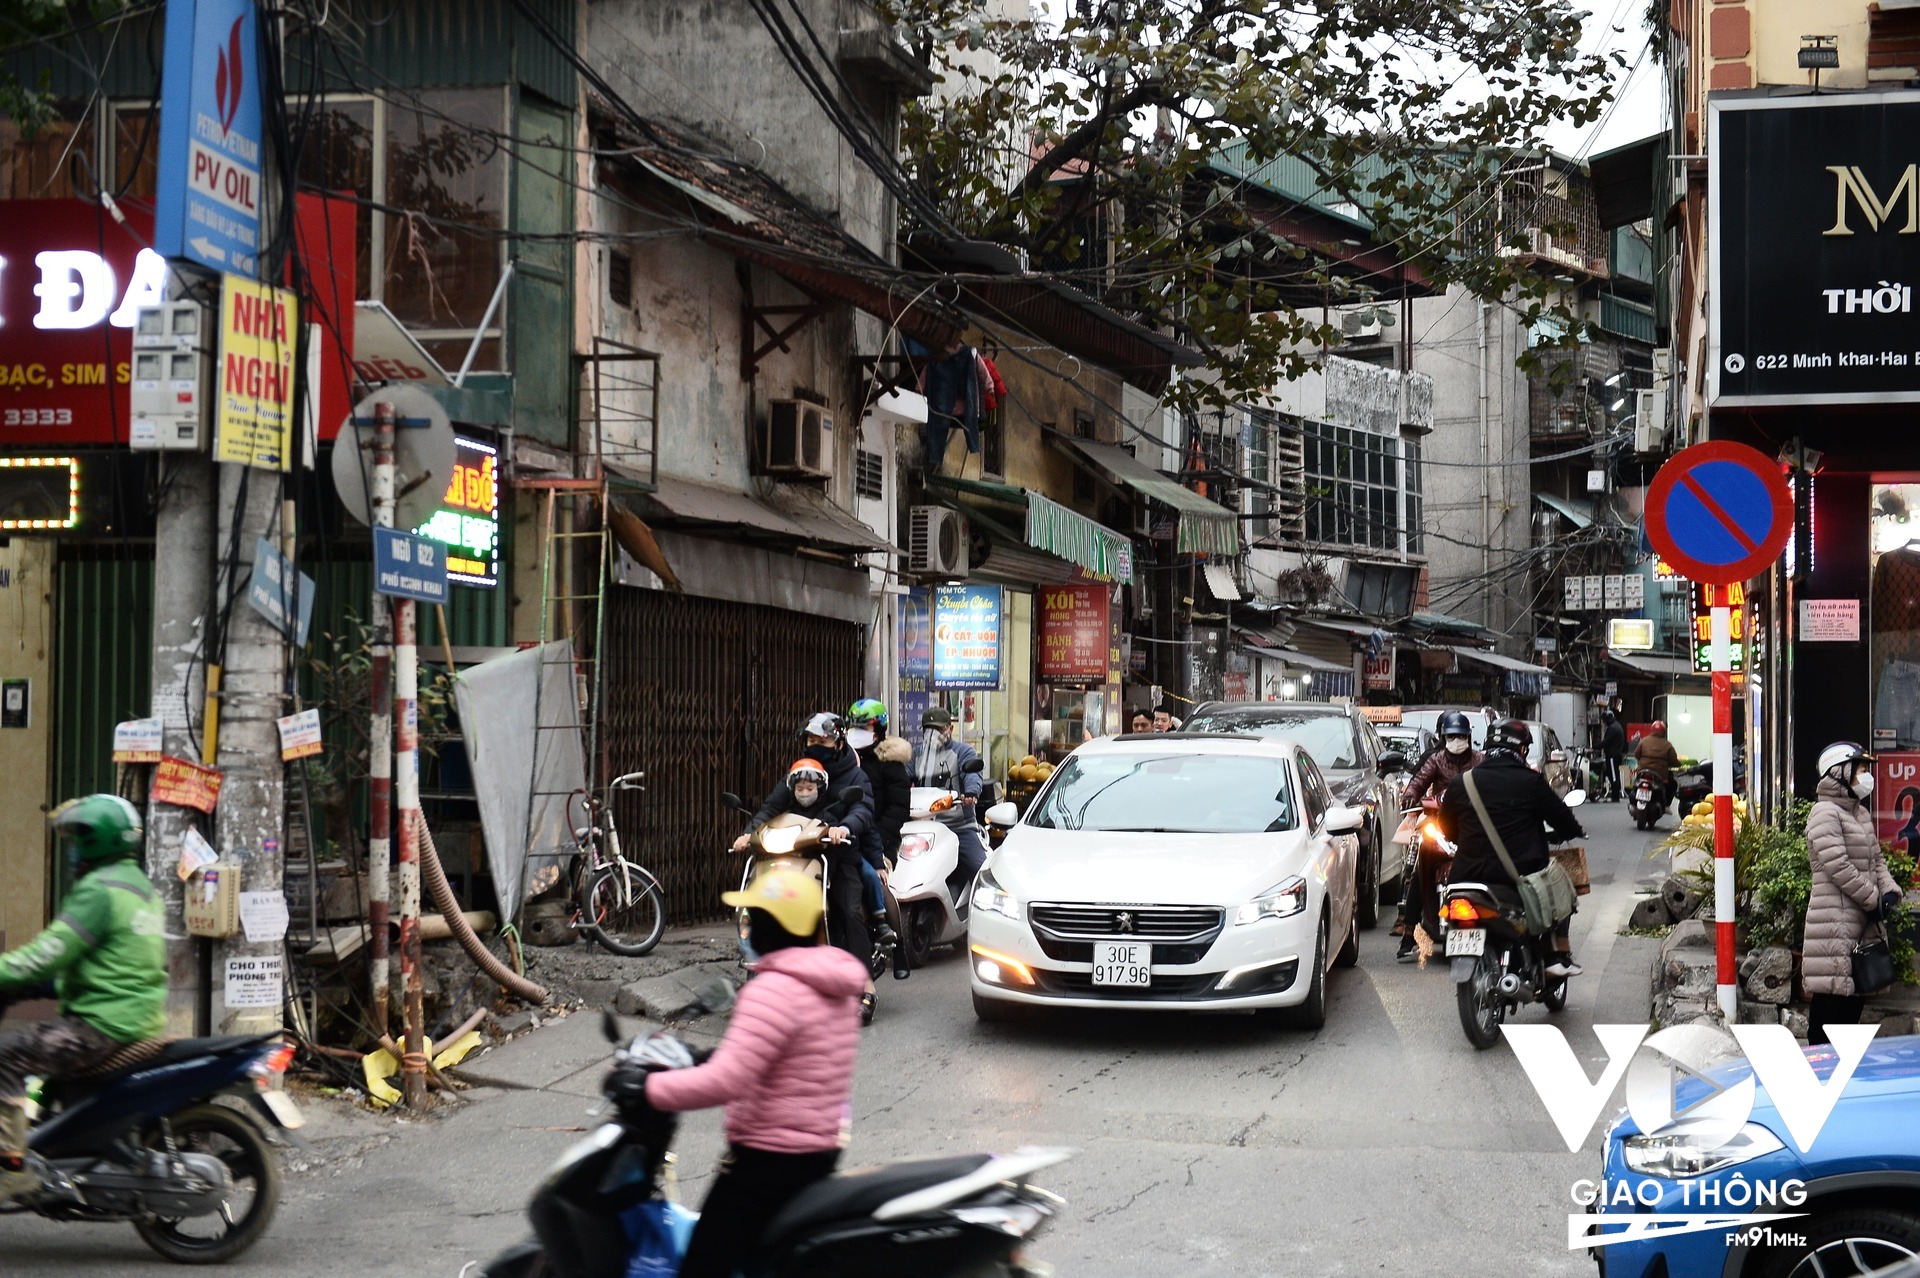 Lượng phương tiện trong ngõ 622 đổ dồn ra đường Minh Khai rất đông, bất kể giờ cao điểm sáng hay chiều.